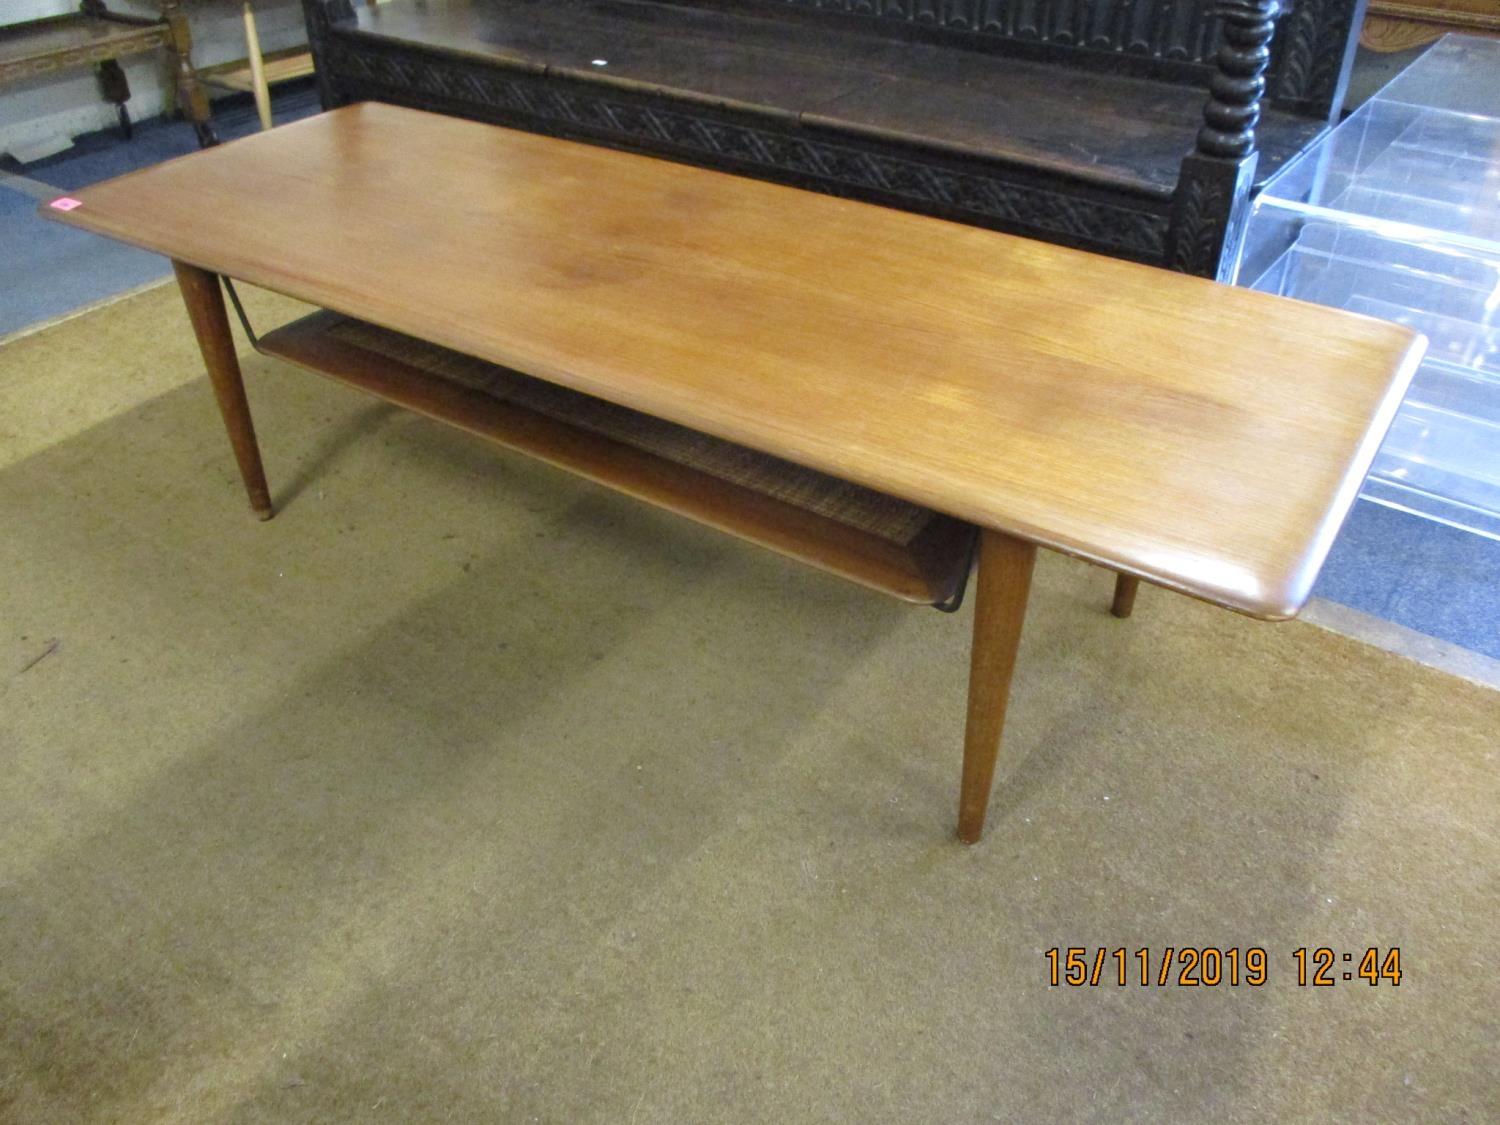 A retro teak coffee table with shelf below 16" x 57" x 21"